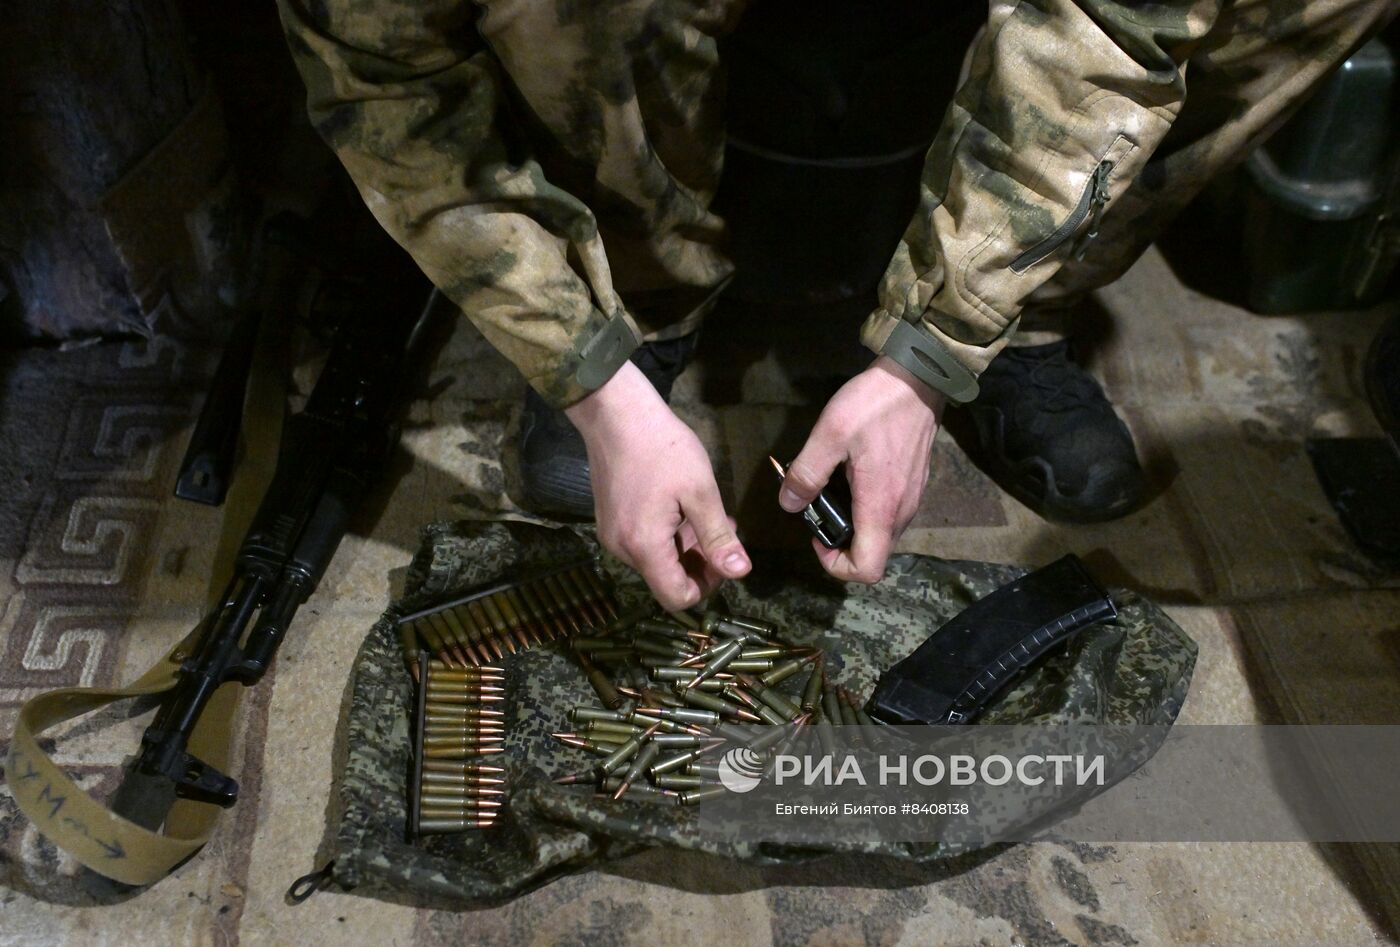 Бойцы спецназа "Ахмат" на кременском участке фронта в Донбассе